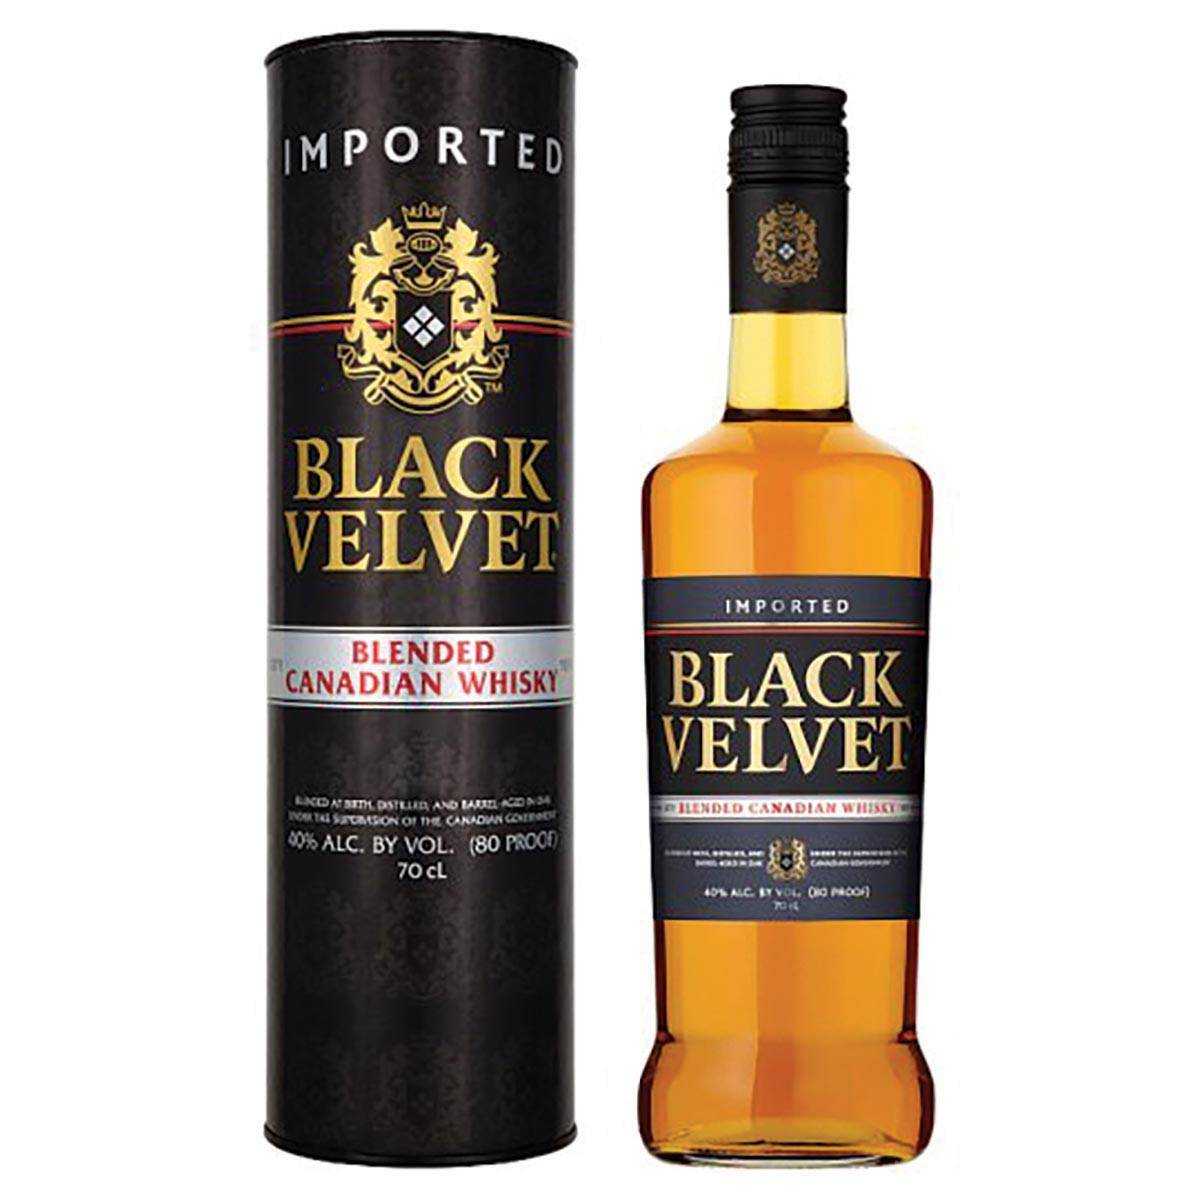 Black velvet: особенности виски блэк вельвет, как отличить от подделки, описание чешского пива вельвет